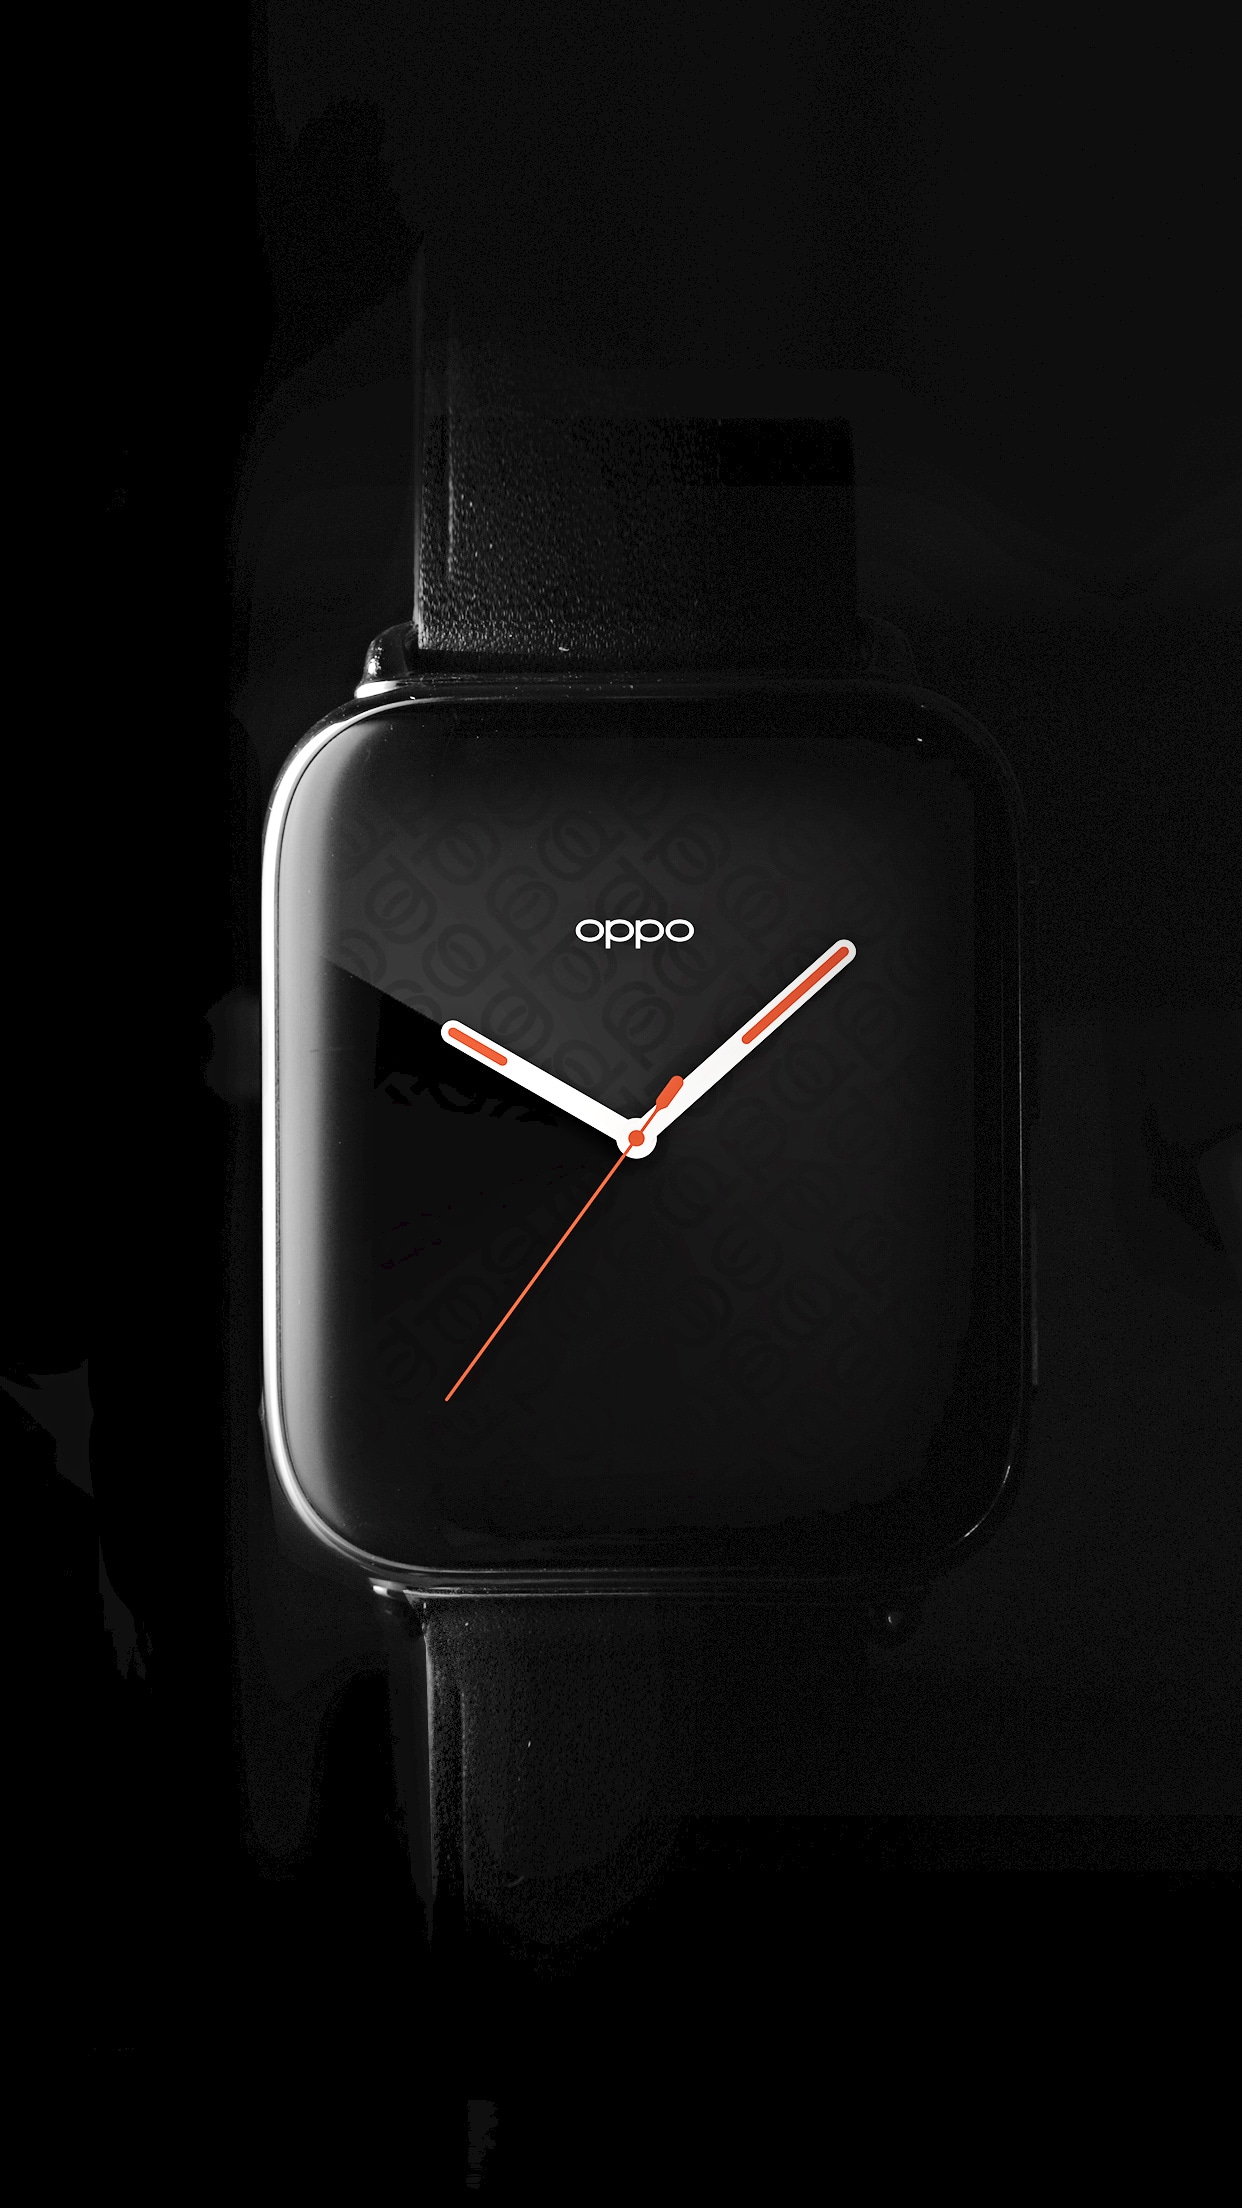 Ammirate lo schermo curvo dello smartwatch Oppo nella nuova immagine ufficiale (foto)